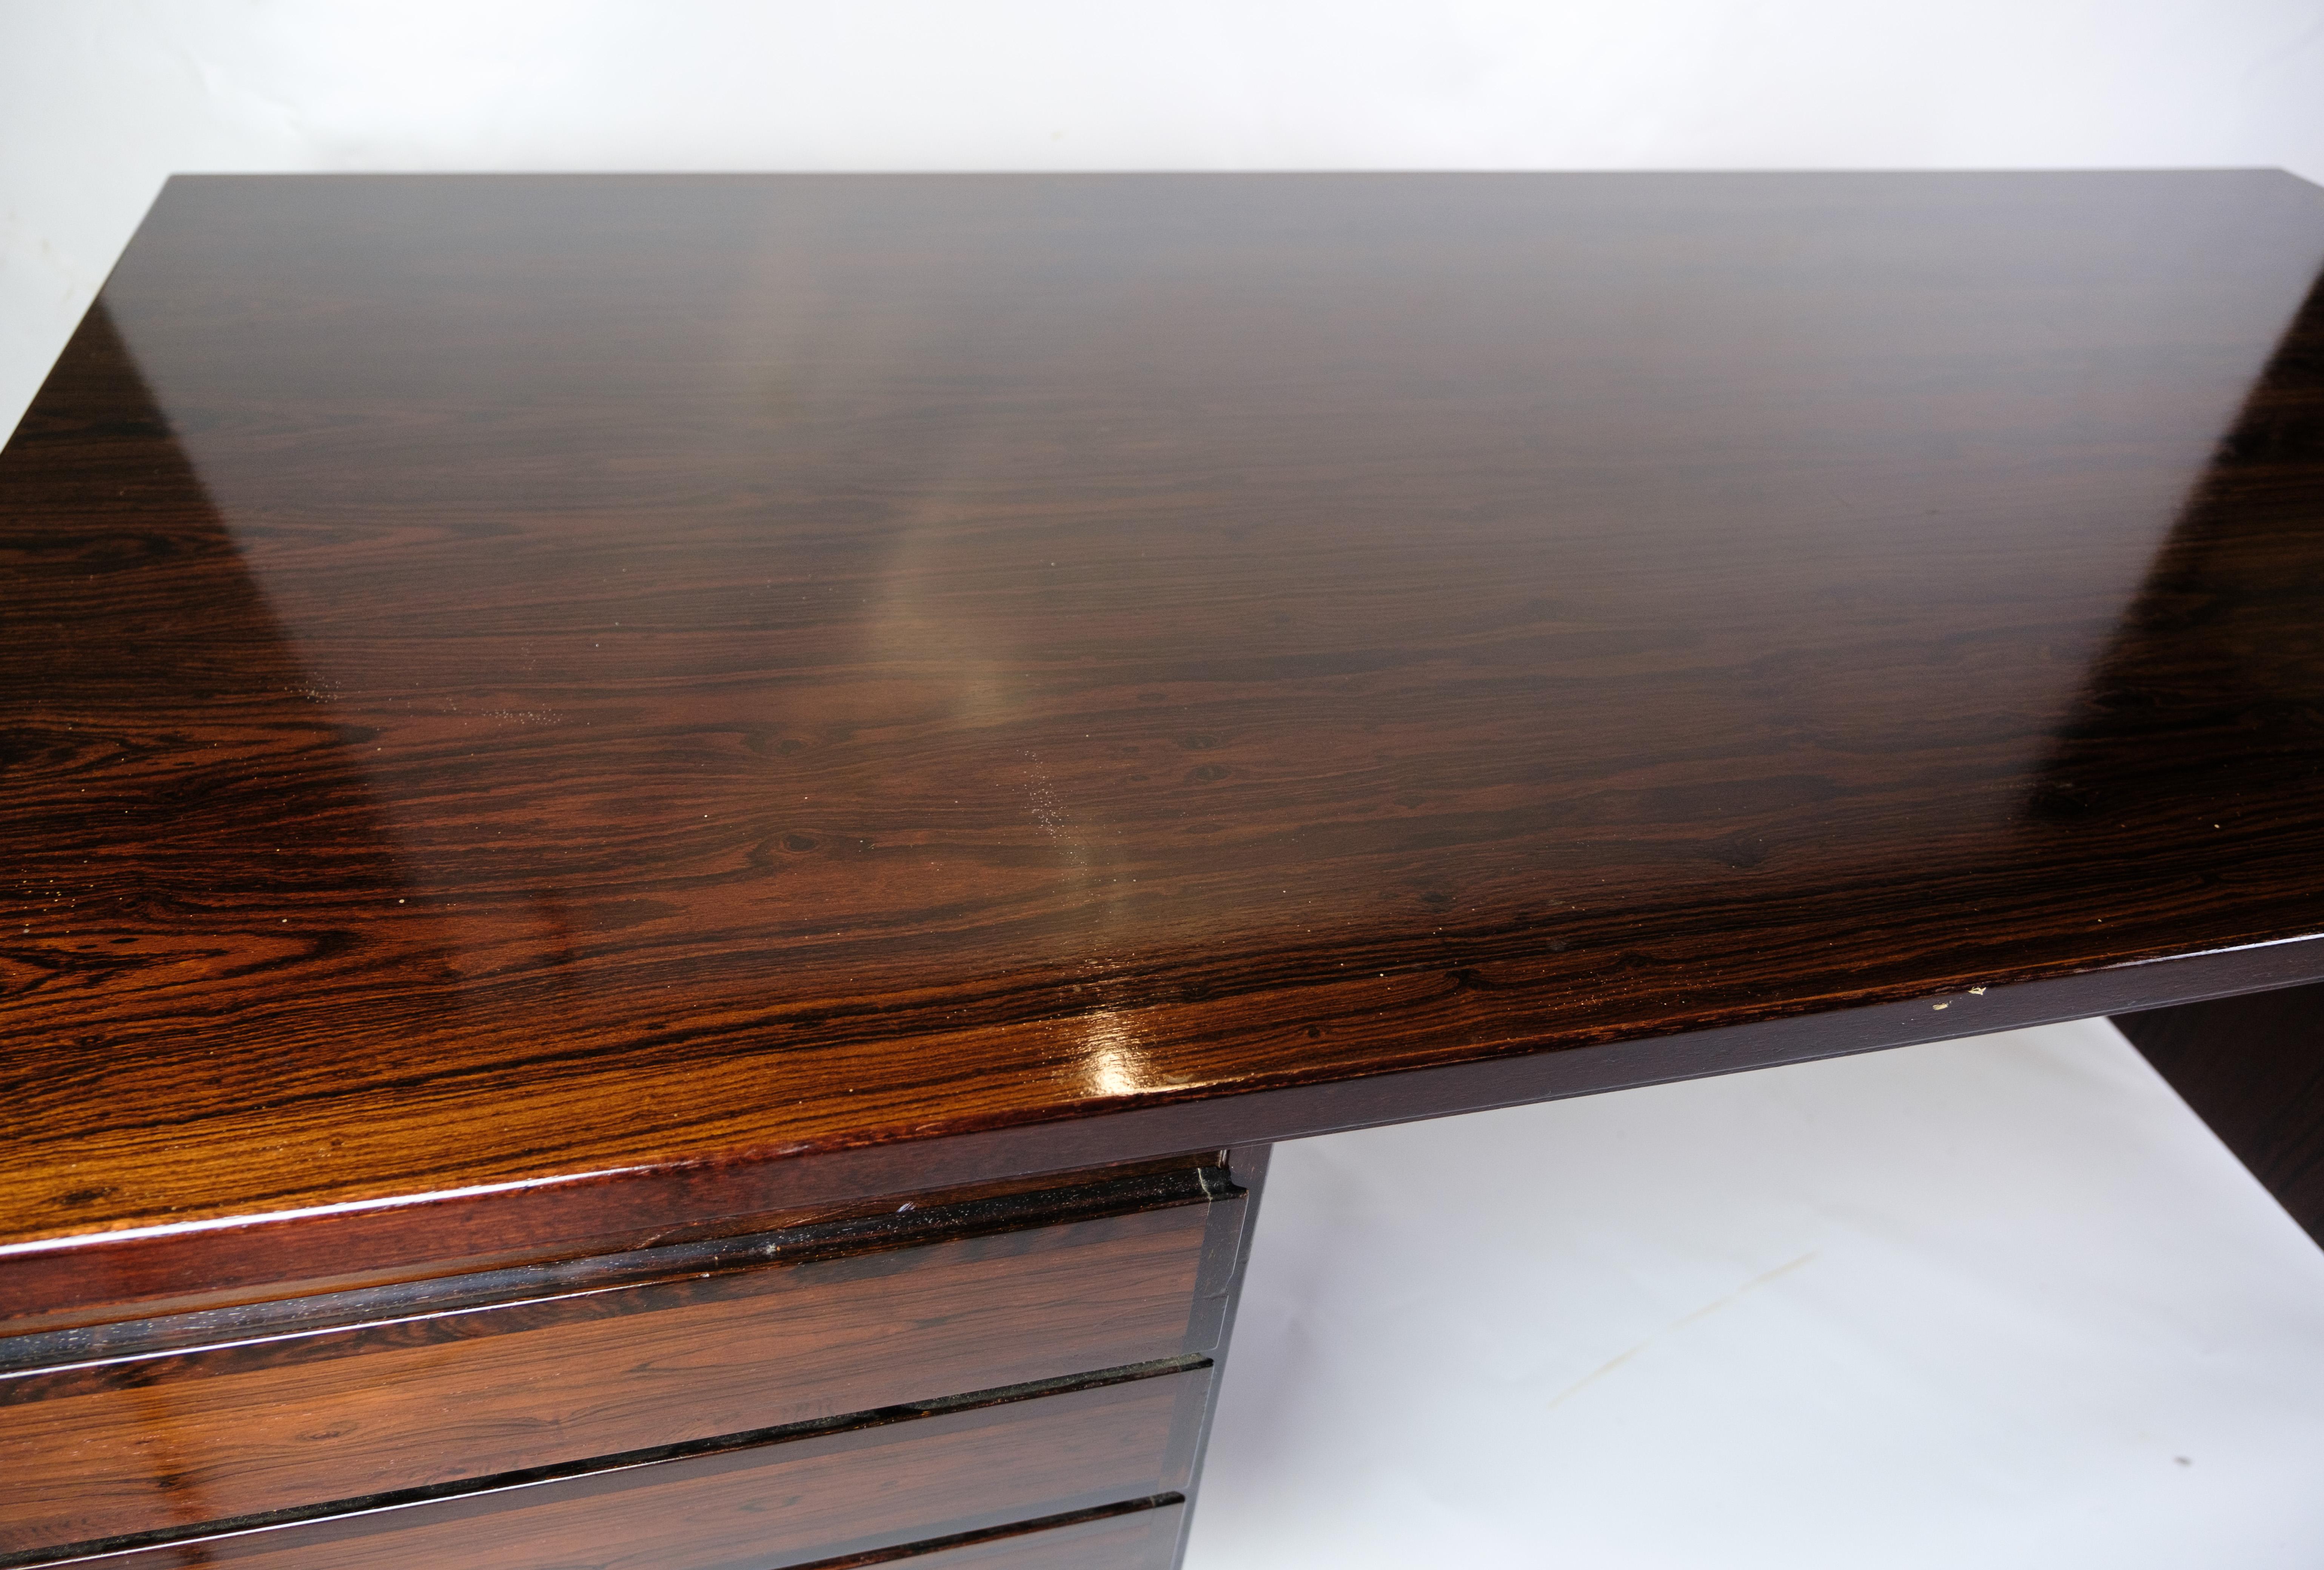 Ce bureau est un bel exemple de design danois des années 1960, créé par Omann Junior Møbelfabrik. Fabriqué en bois de rose de haute qualité, il dégage une élégance intemporelle et une finesse artisanale.

Derrière cette merveille de bureau se trouve